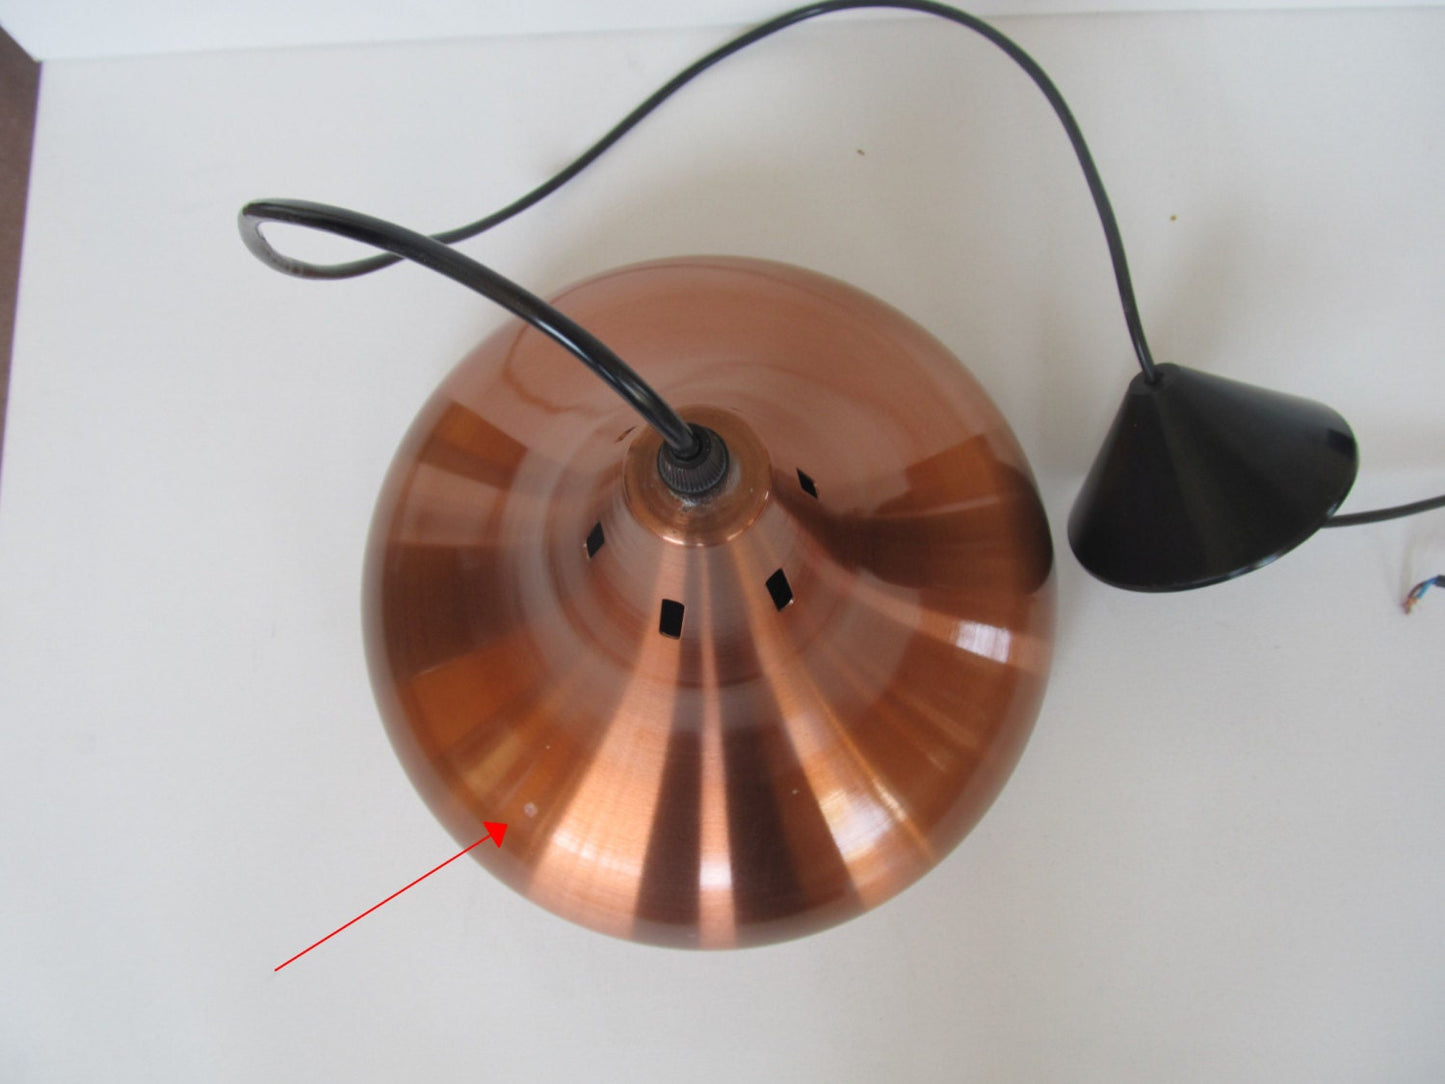 Par de lámparas biljart de carambola de color cobre de aluminio cepillado (2X), precio por ambas